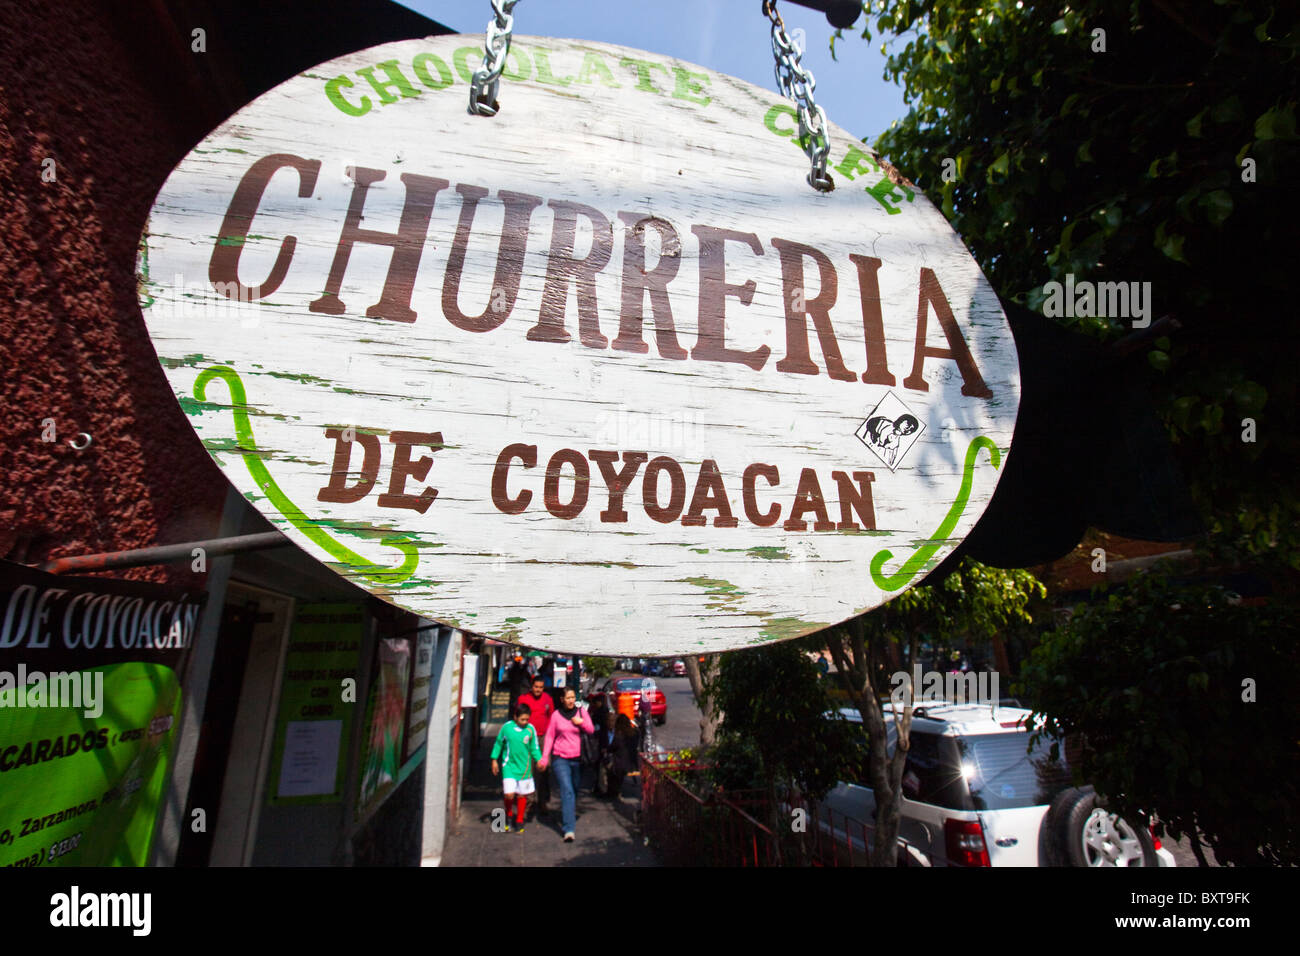 Churreria, Coyoacan, Mexico City, Mexico Stock Photo